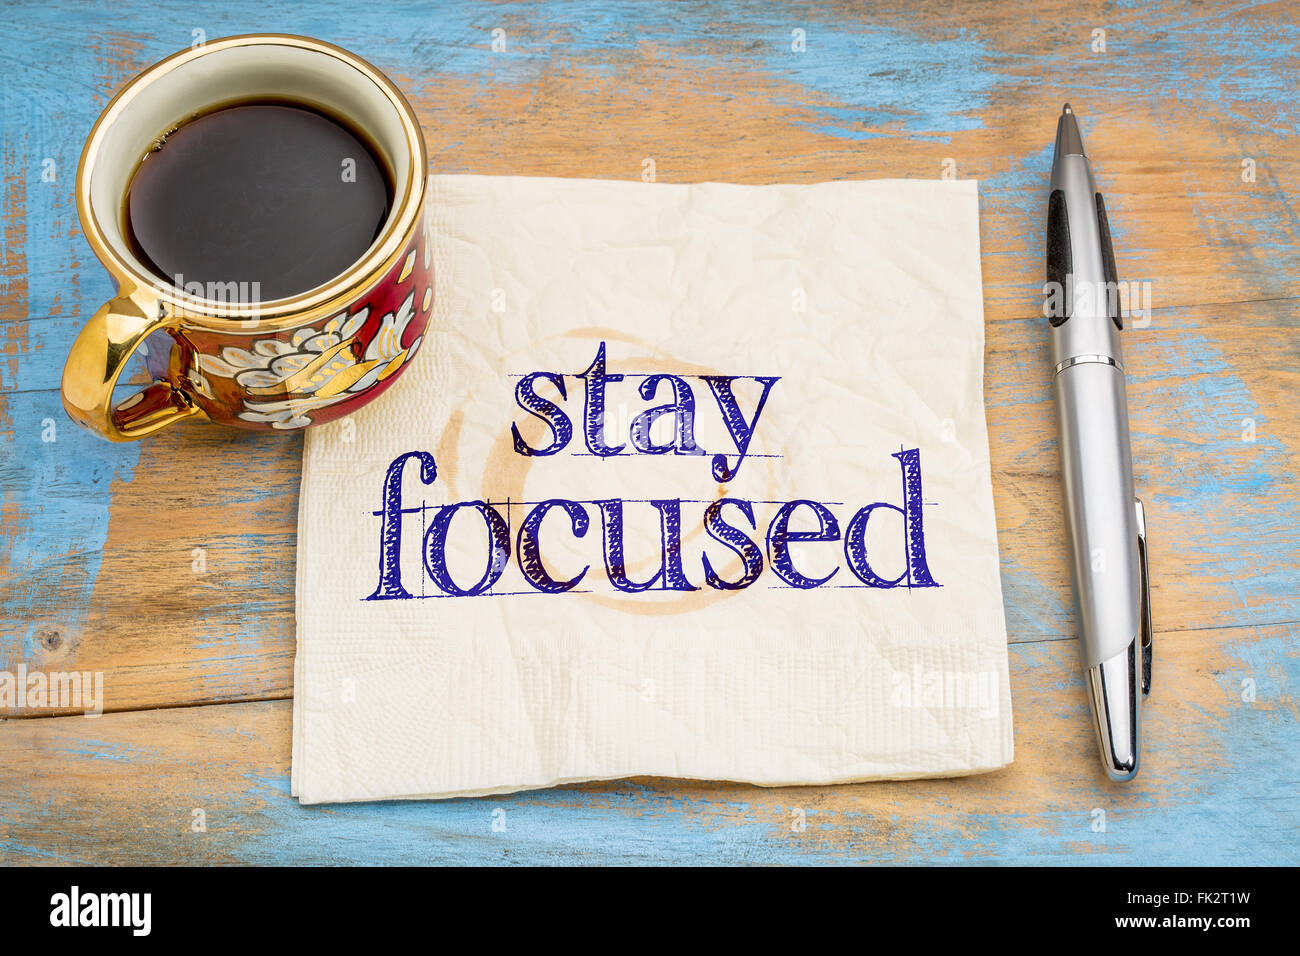 Manténgase enfocado recordatorio o asesoramiento - escritura en una servilleta con una taza de café contra una madera pintada grunge Foto de stock